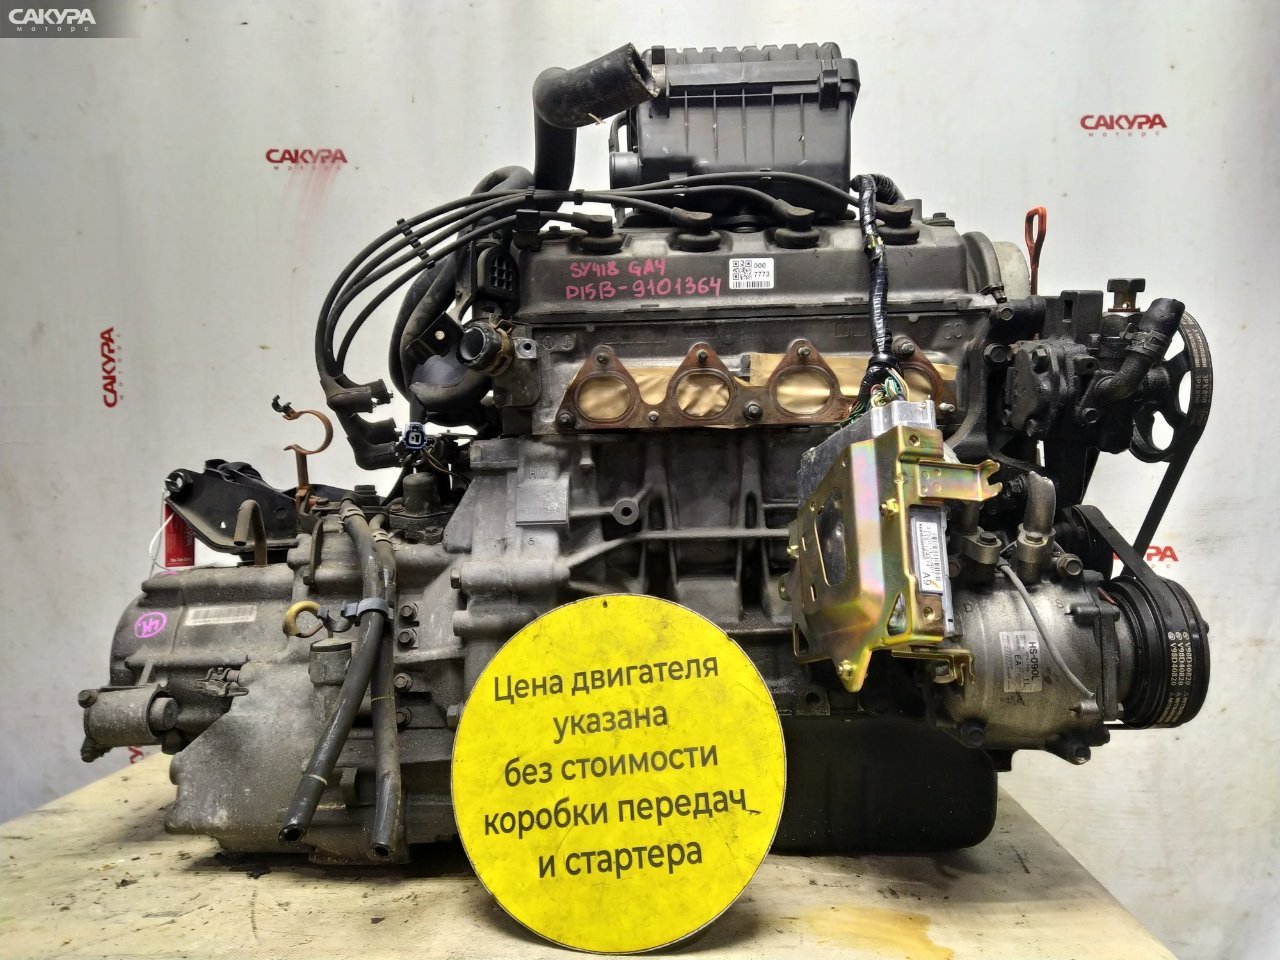 Двигатель Honda Capa GA4 D15B: купить в Сакура Красноярск.